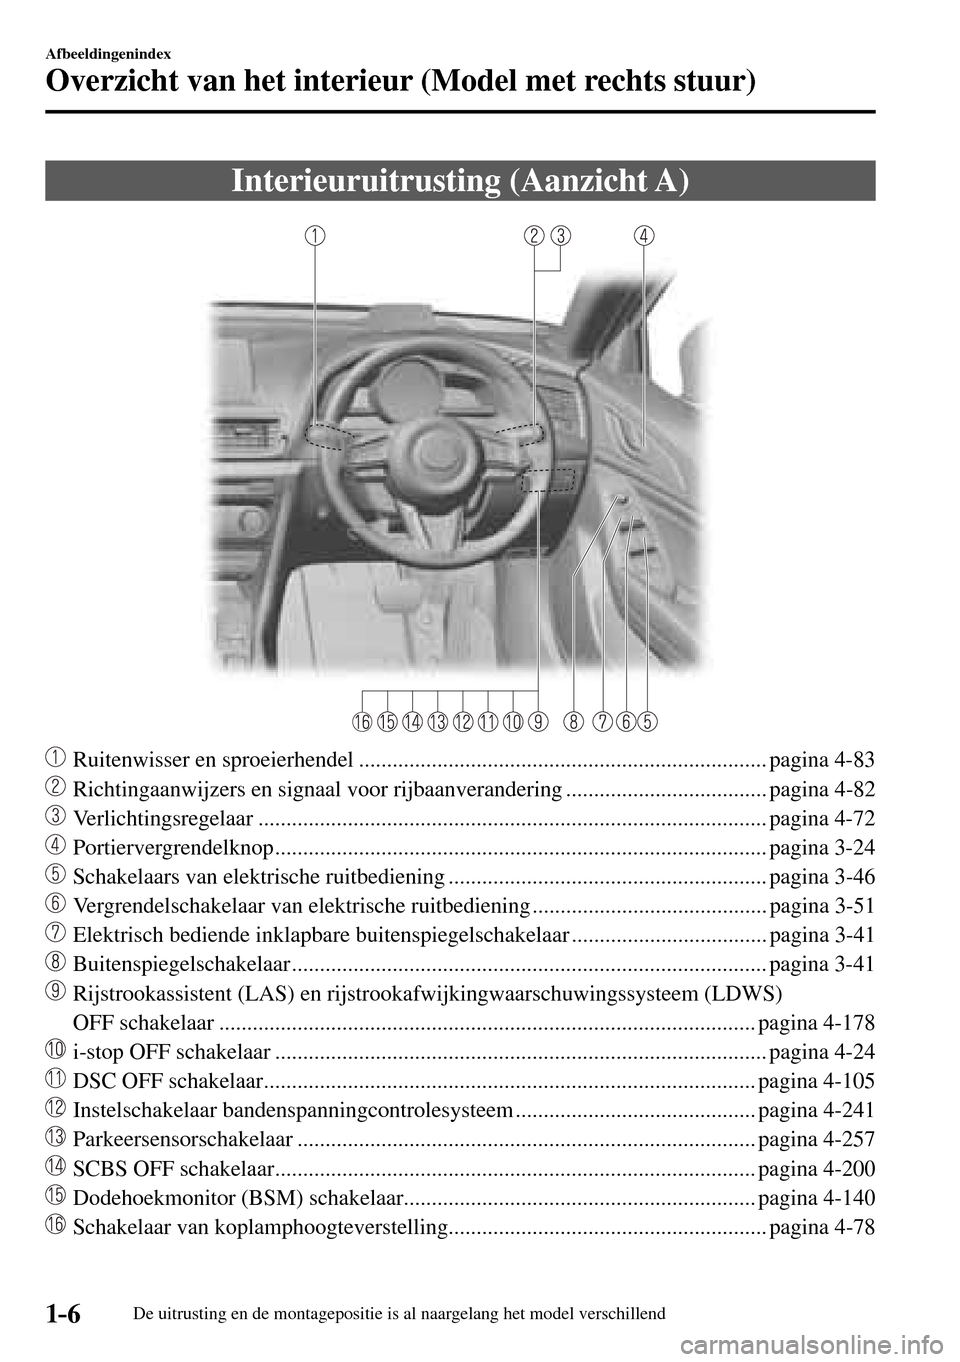 MAZDA MODEL 3 HATCHBACK 2016  Handleiding (in Dutch) 1–6
Afbeeldingenindex
Overzicht van het interieur (Model met rechts stuur)
De uitrusting en de montagepositie is al naargelang het model verschillend
      Interieuruitrusting  (Aanzicht  A)
     Ru